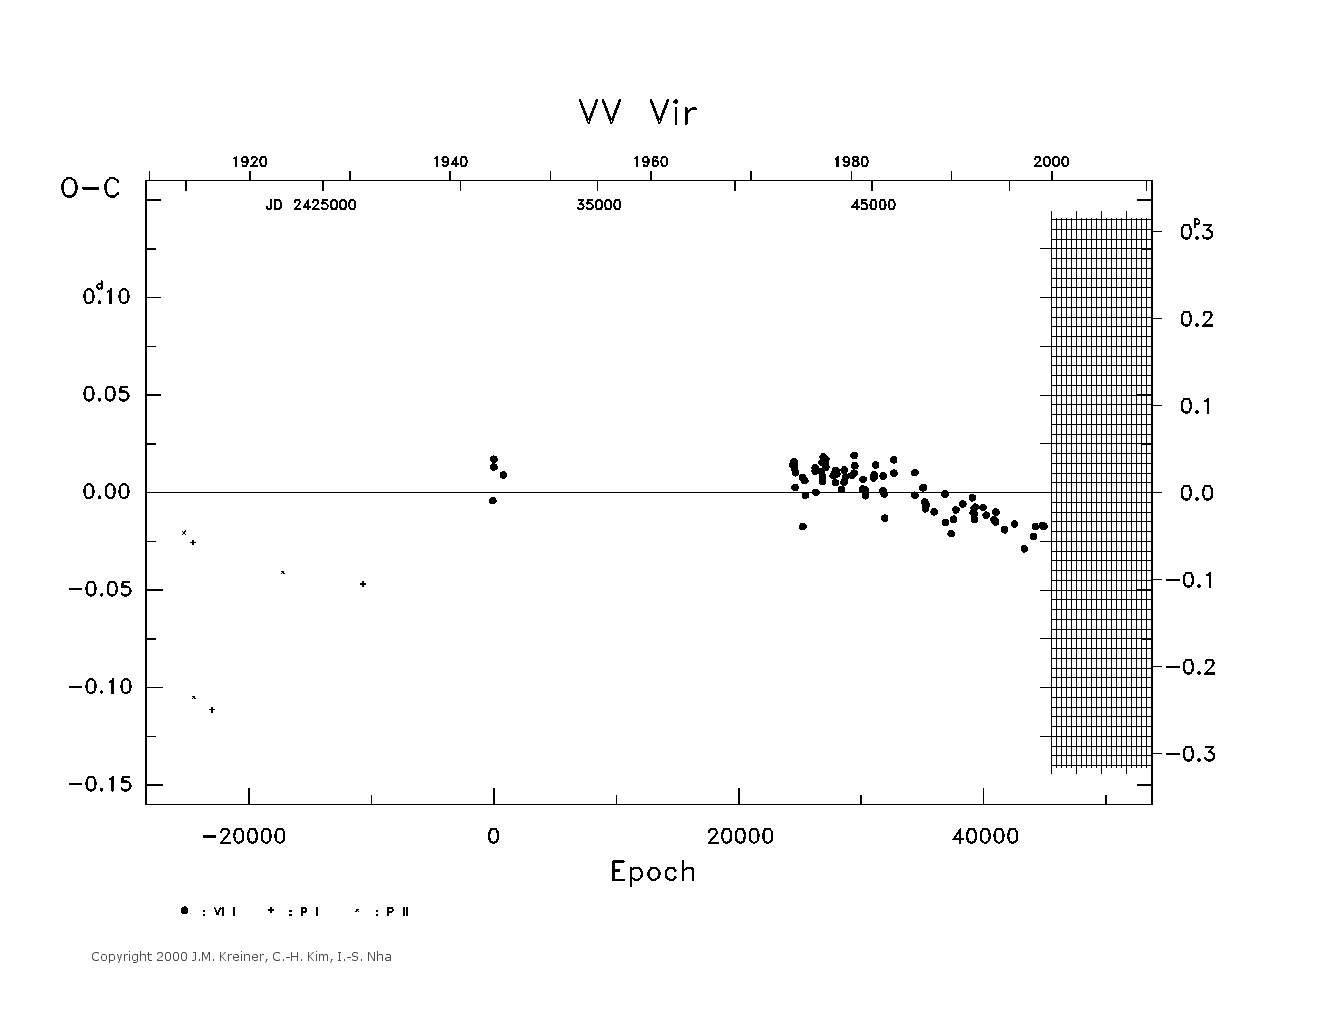 [IMAGE: large VV VIR O-C diagram]